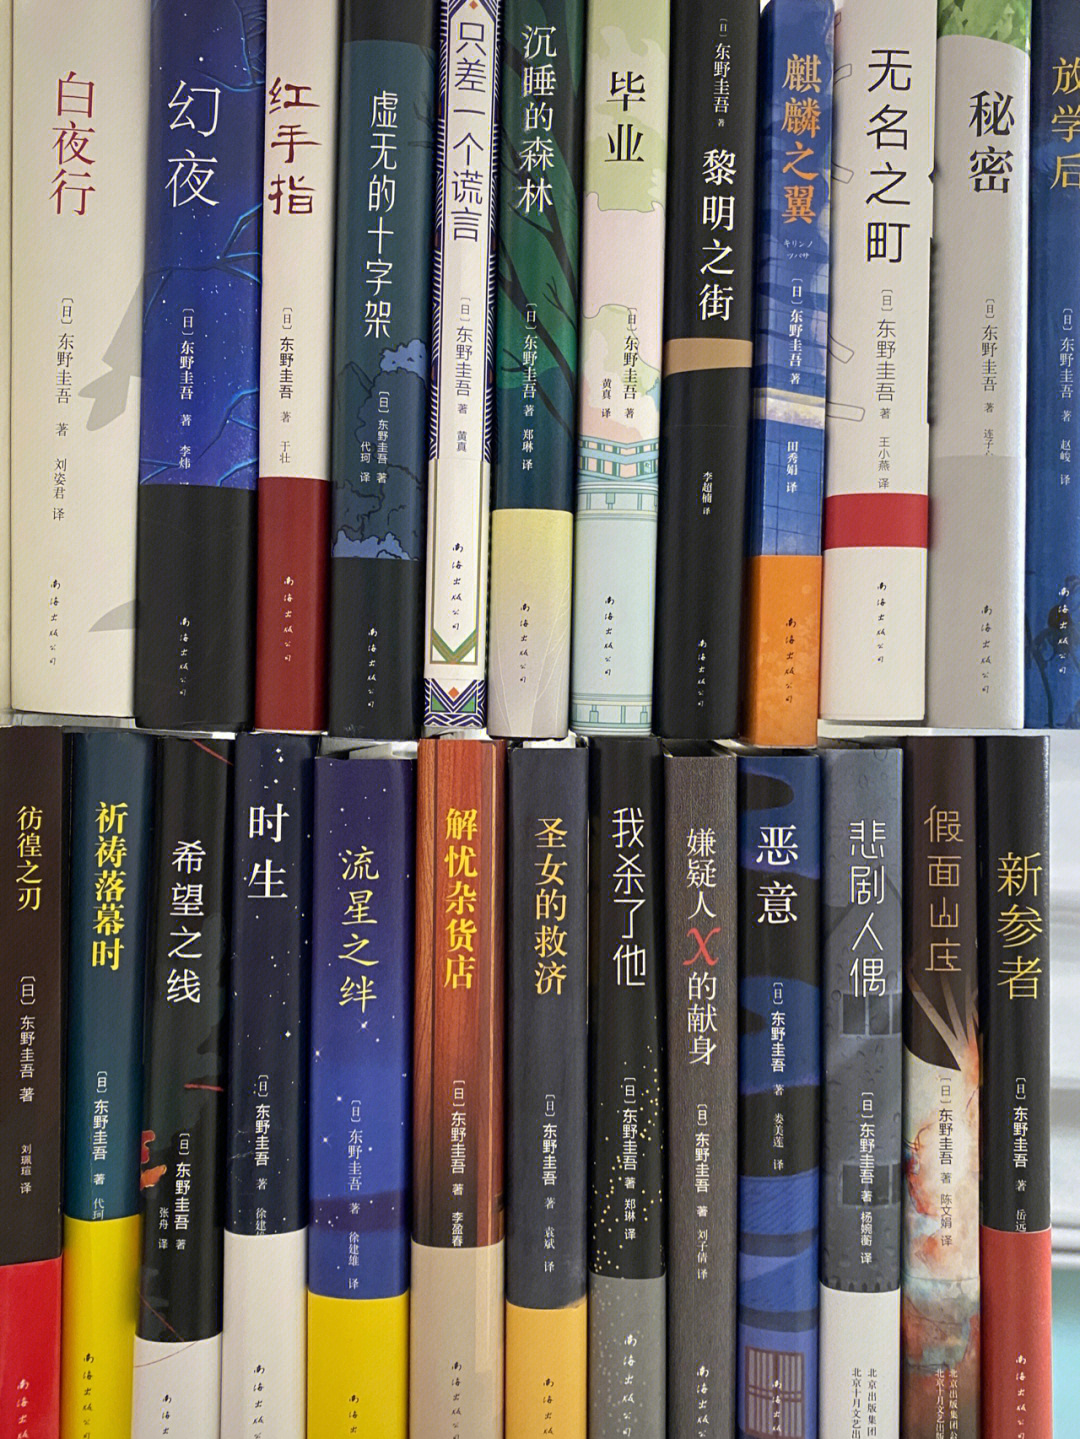 东野圭吾这26本书你最喜欢哪本